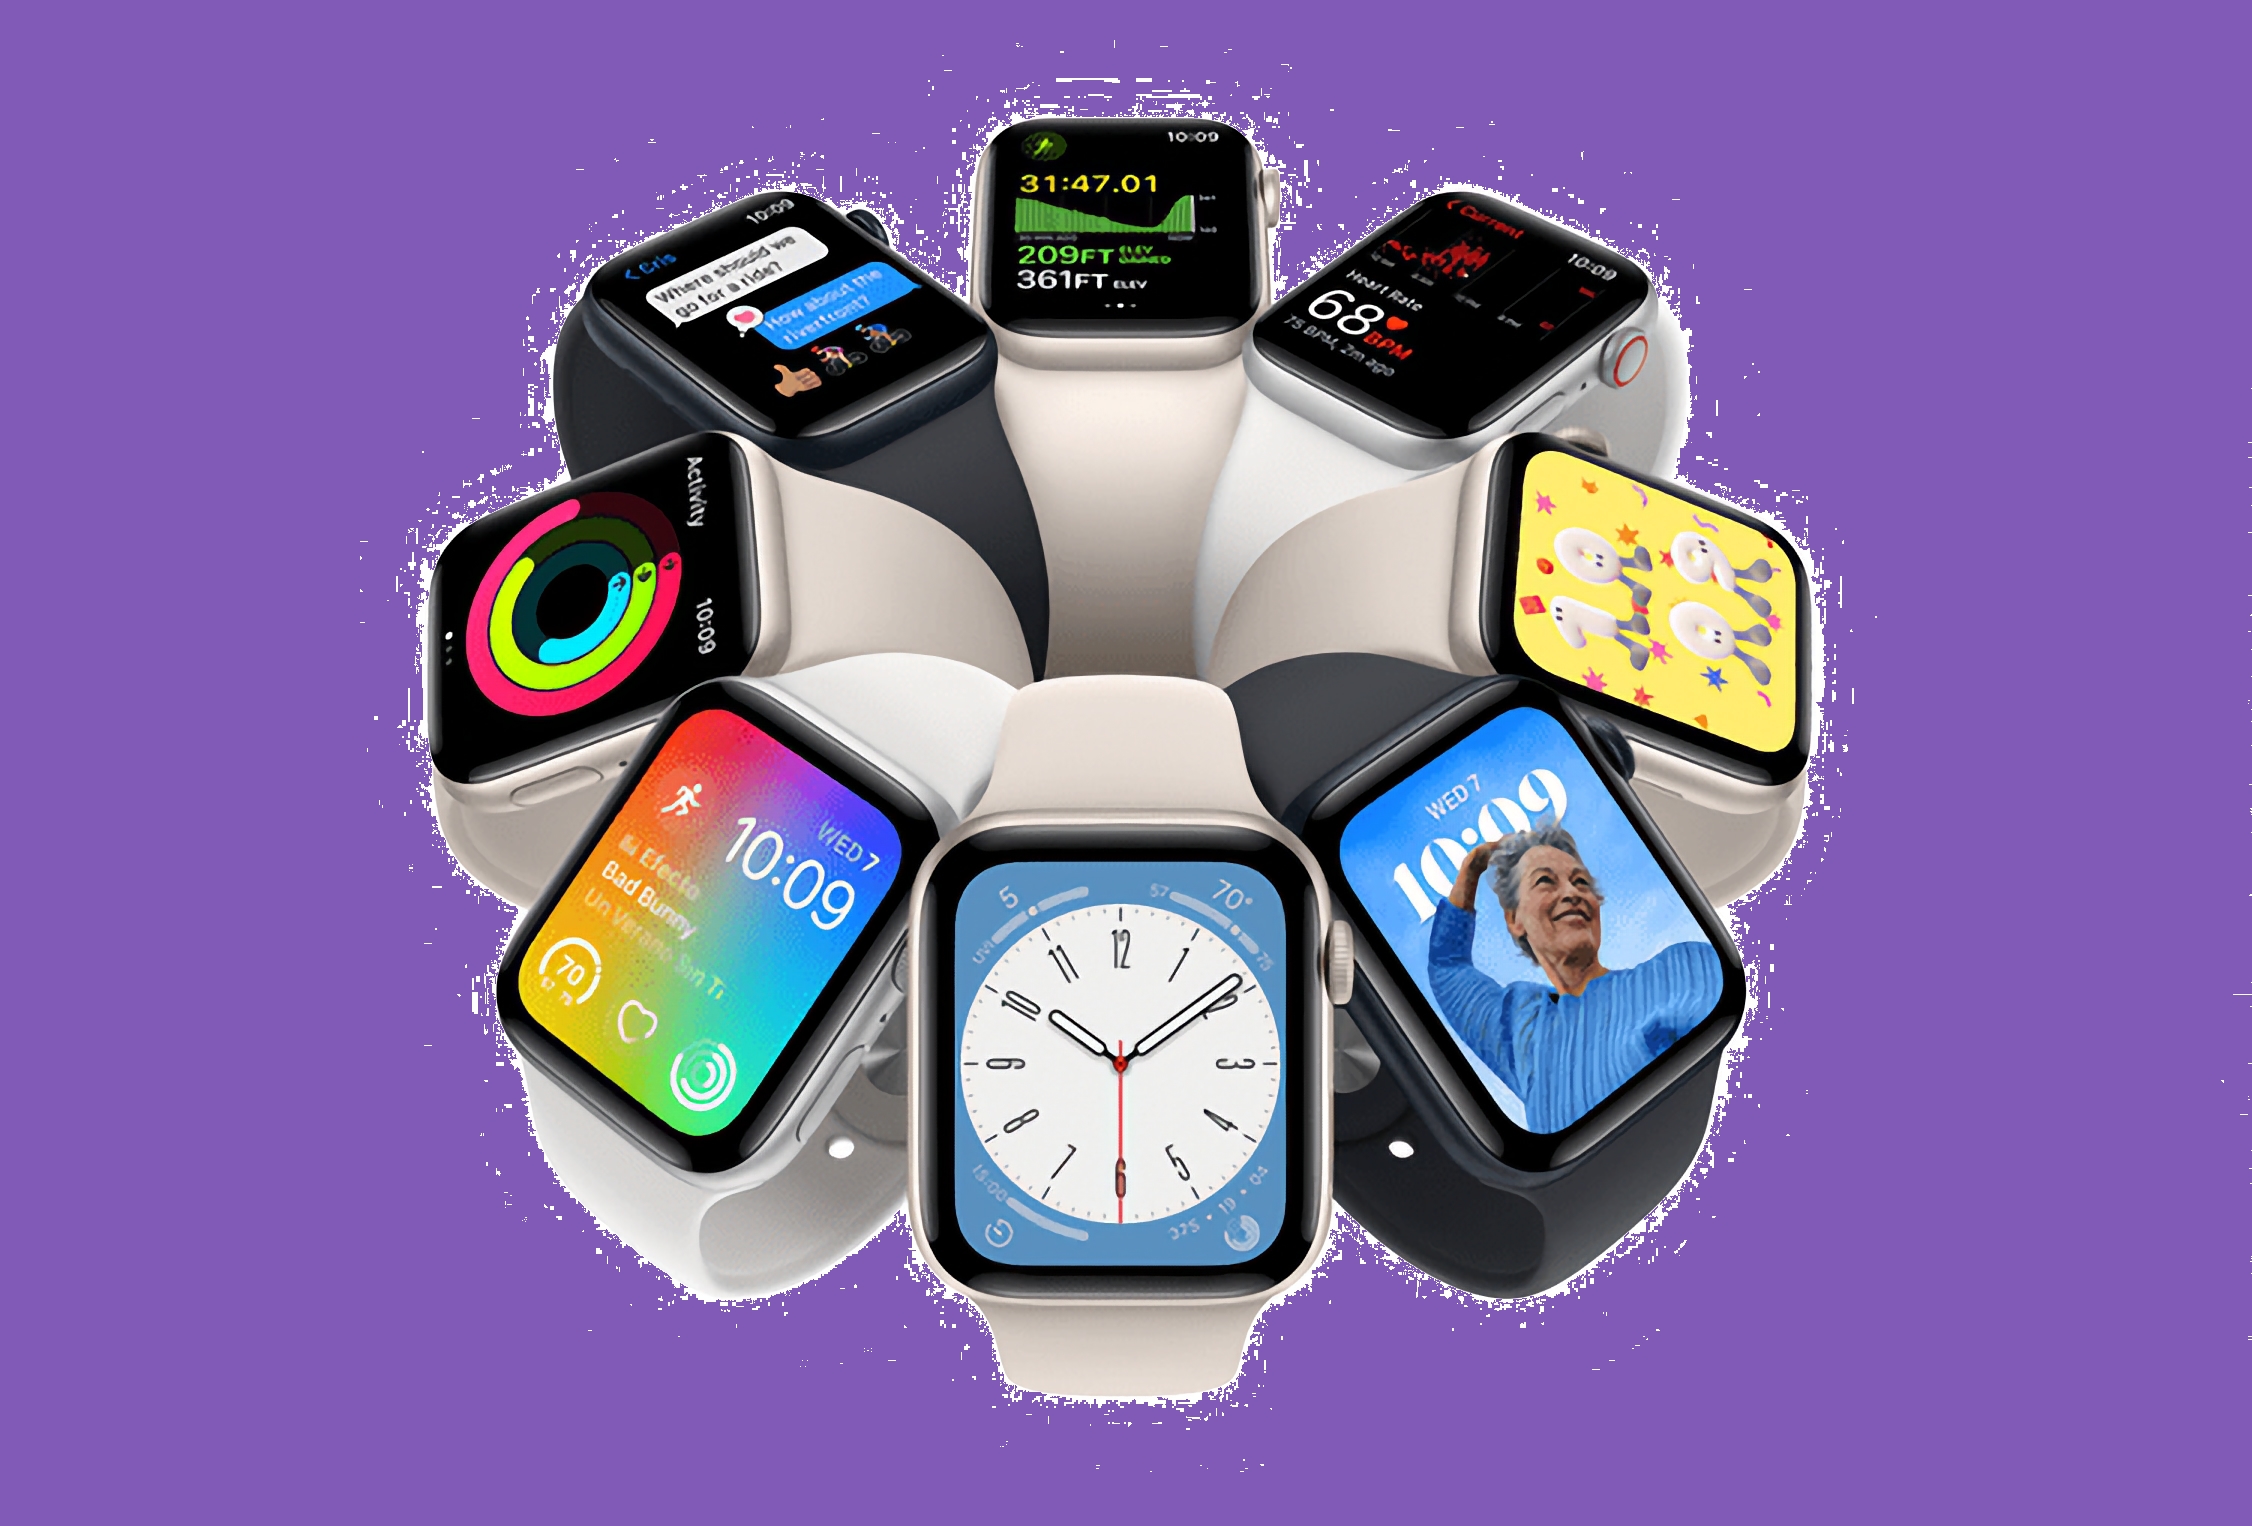 Rabatten är $ 50: Apple Watch SE (2nd Gen) är tillgänglig på Amazon till ett kampanjpris